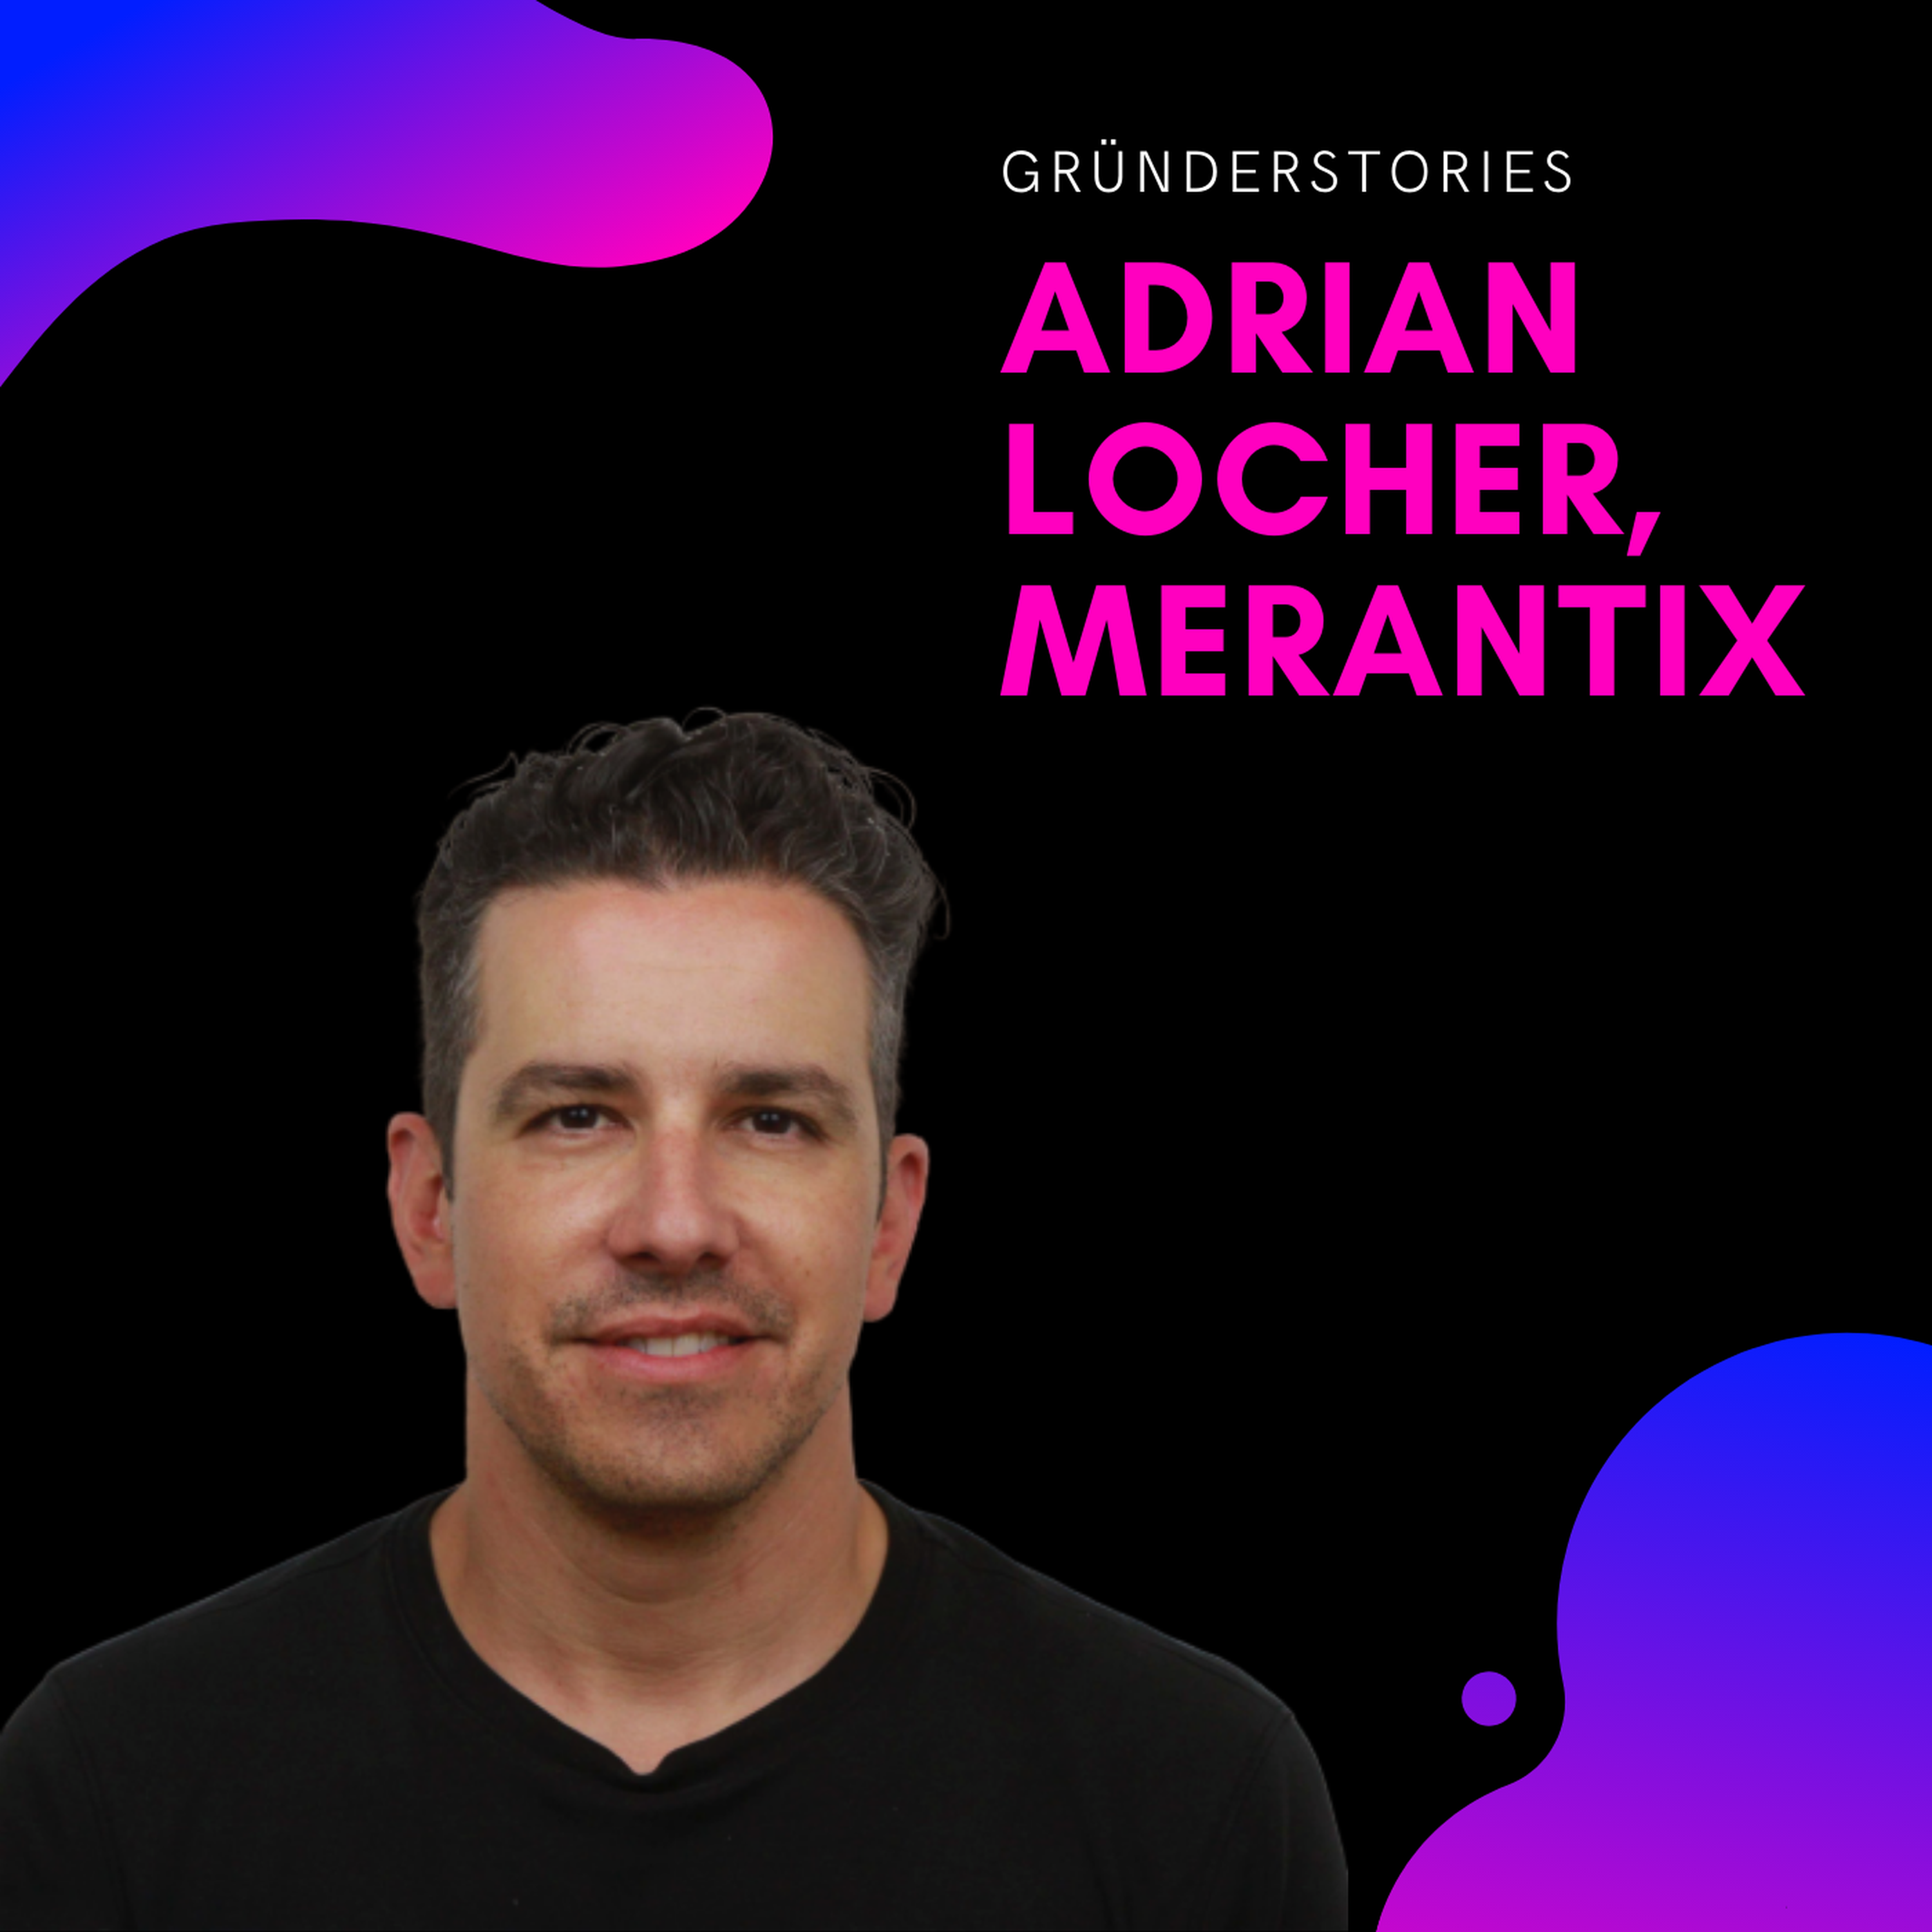 Adrian Locher, Merantix | Gründerstories Image